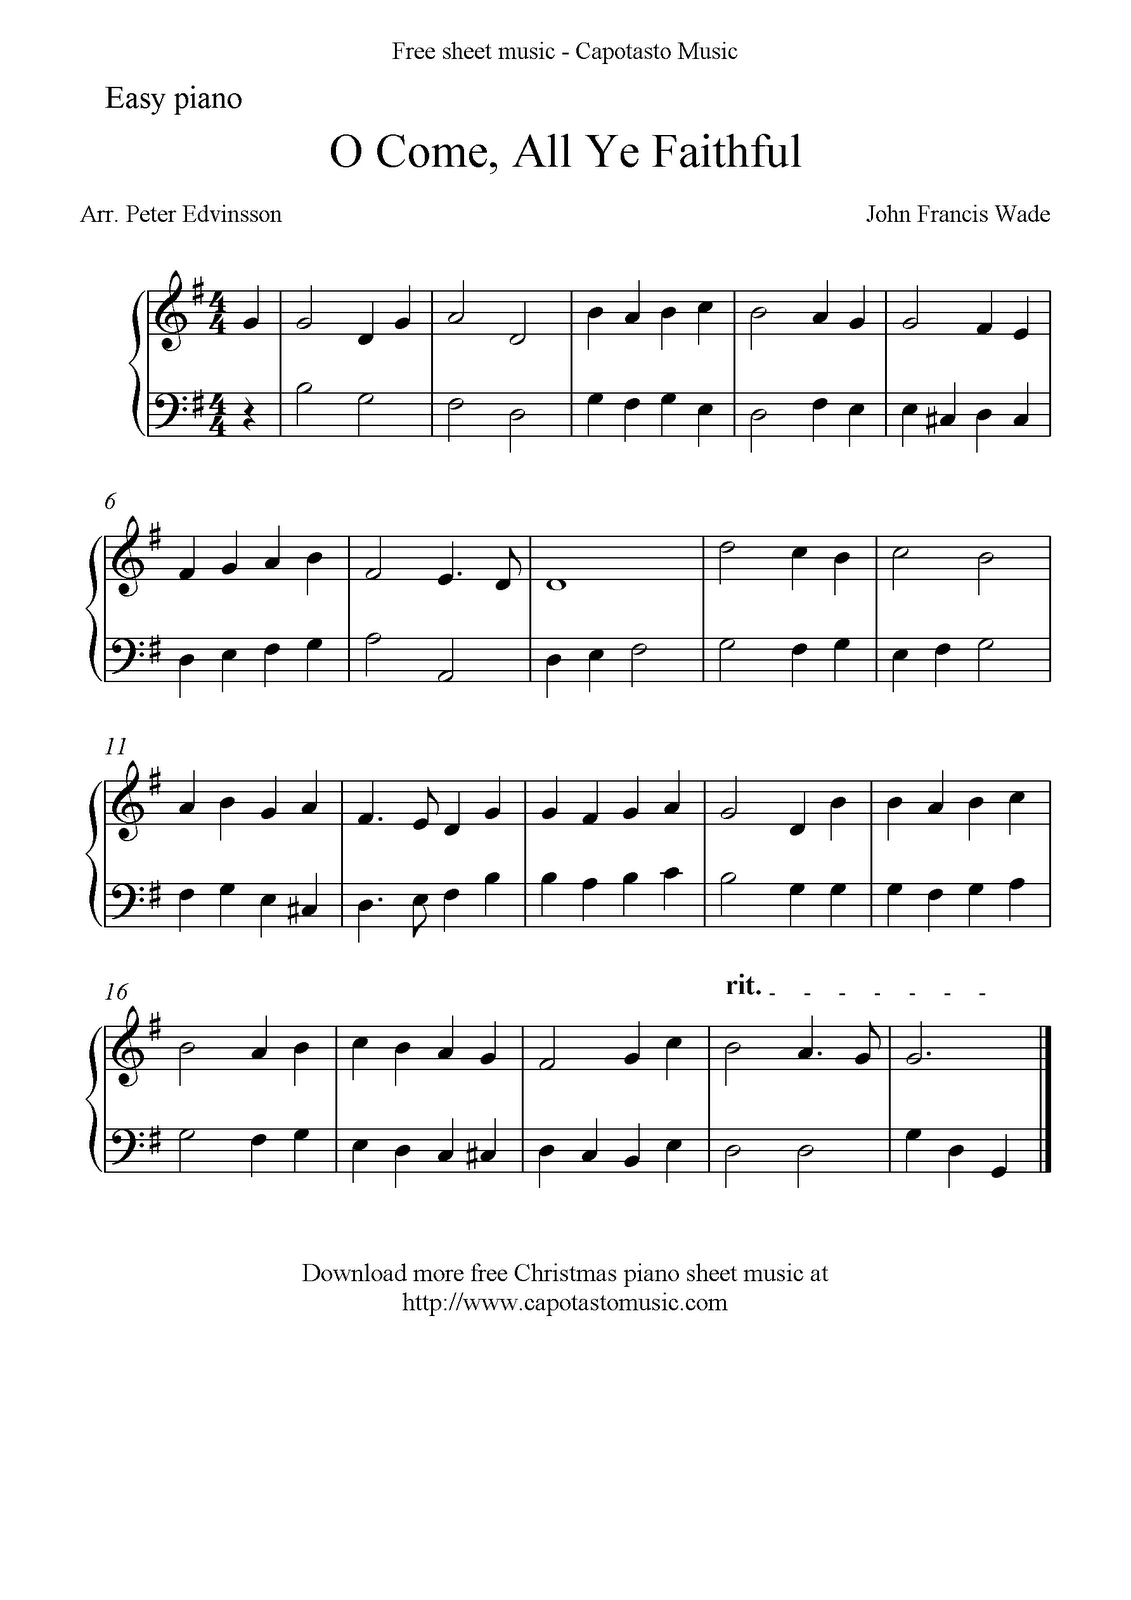 Free Easy Christmas Piano Sheet Music, O Come, All Ye Faithful - Christmas Piano Sheet Music Easy Free Printable